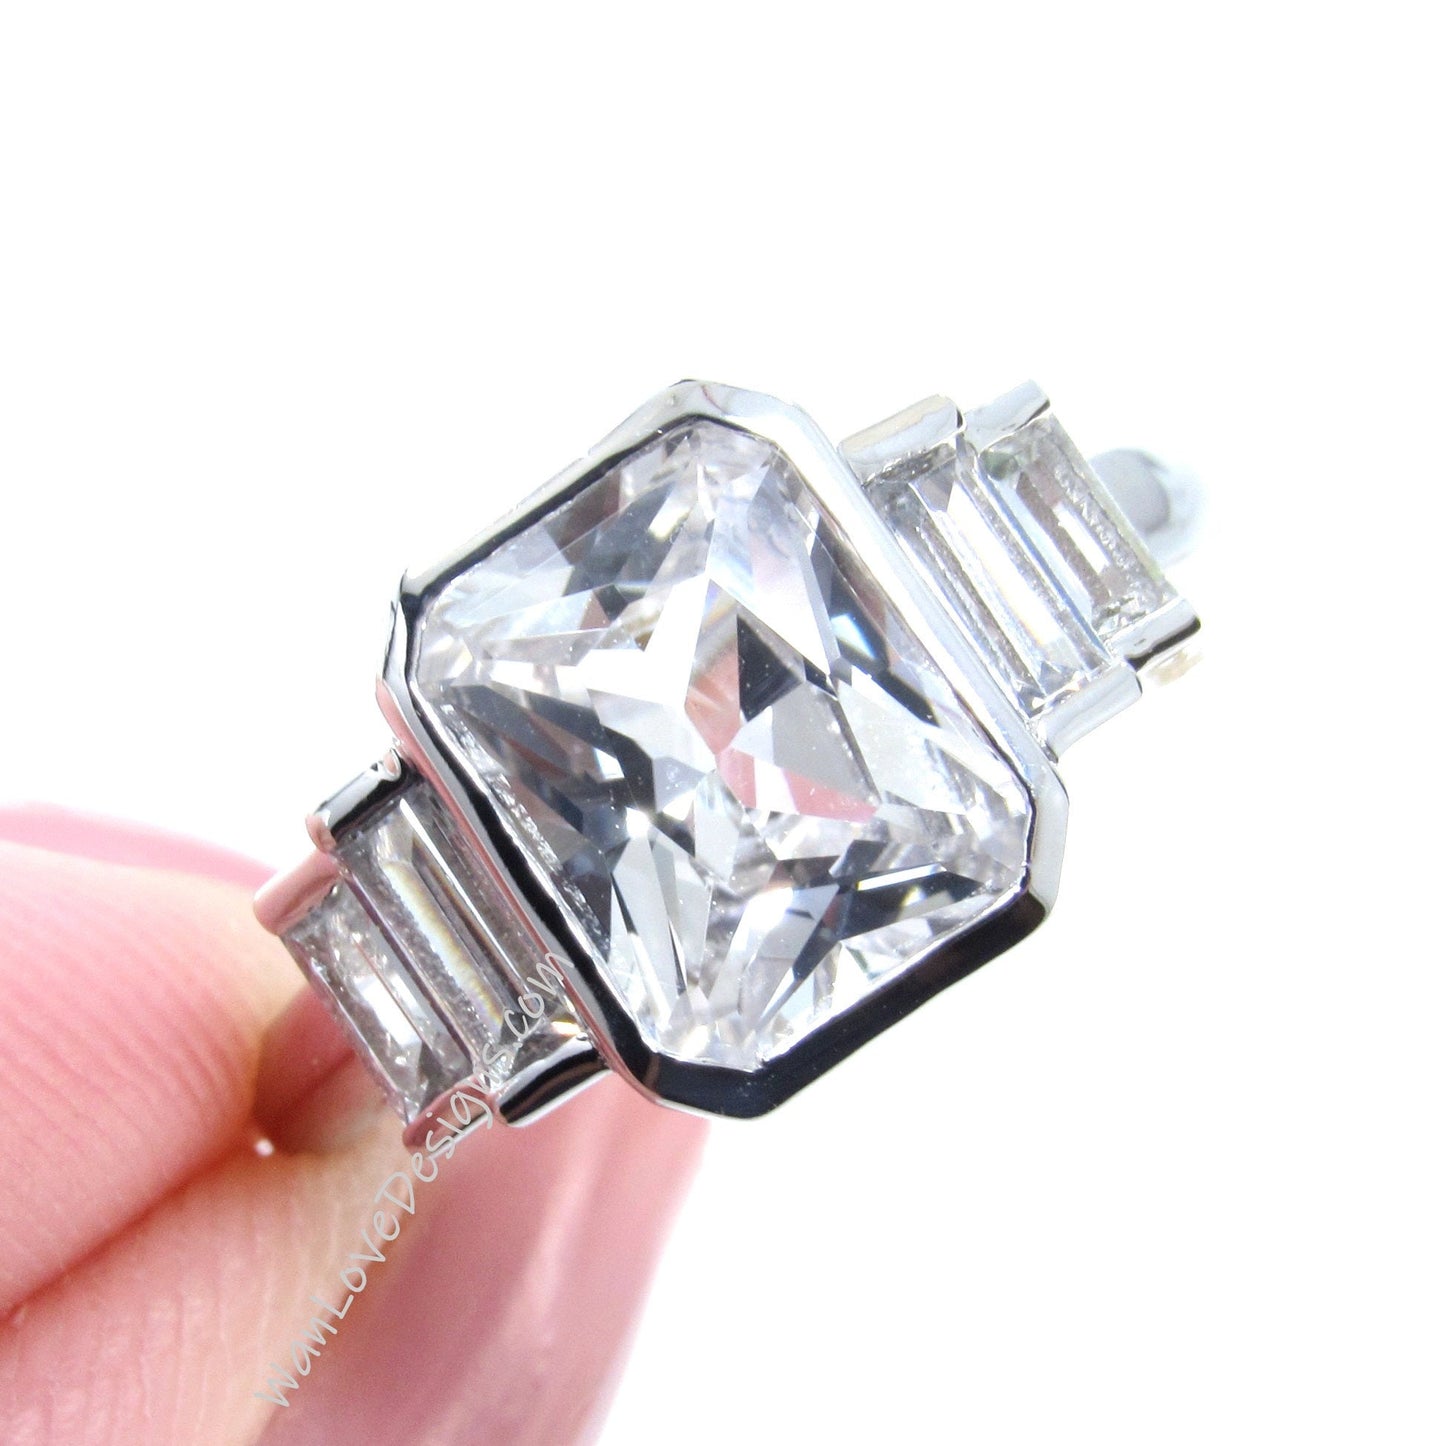 White Sapphire Emerald Baguette Bezel Engagement Ring art deco 3ct radiant bezel white gold ring wedding promise ring anniversary gift-Ready